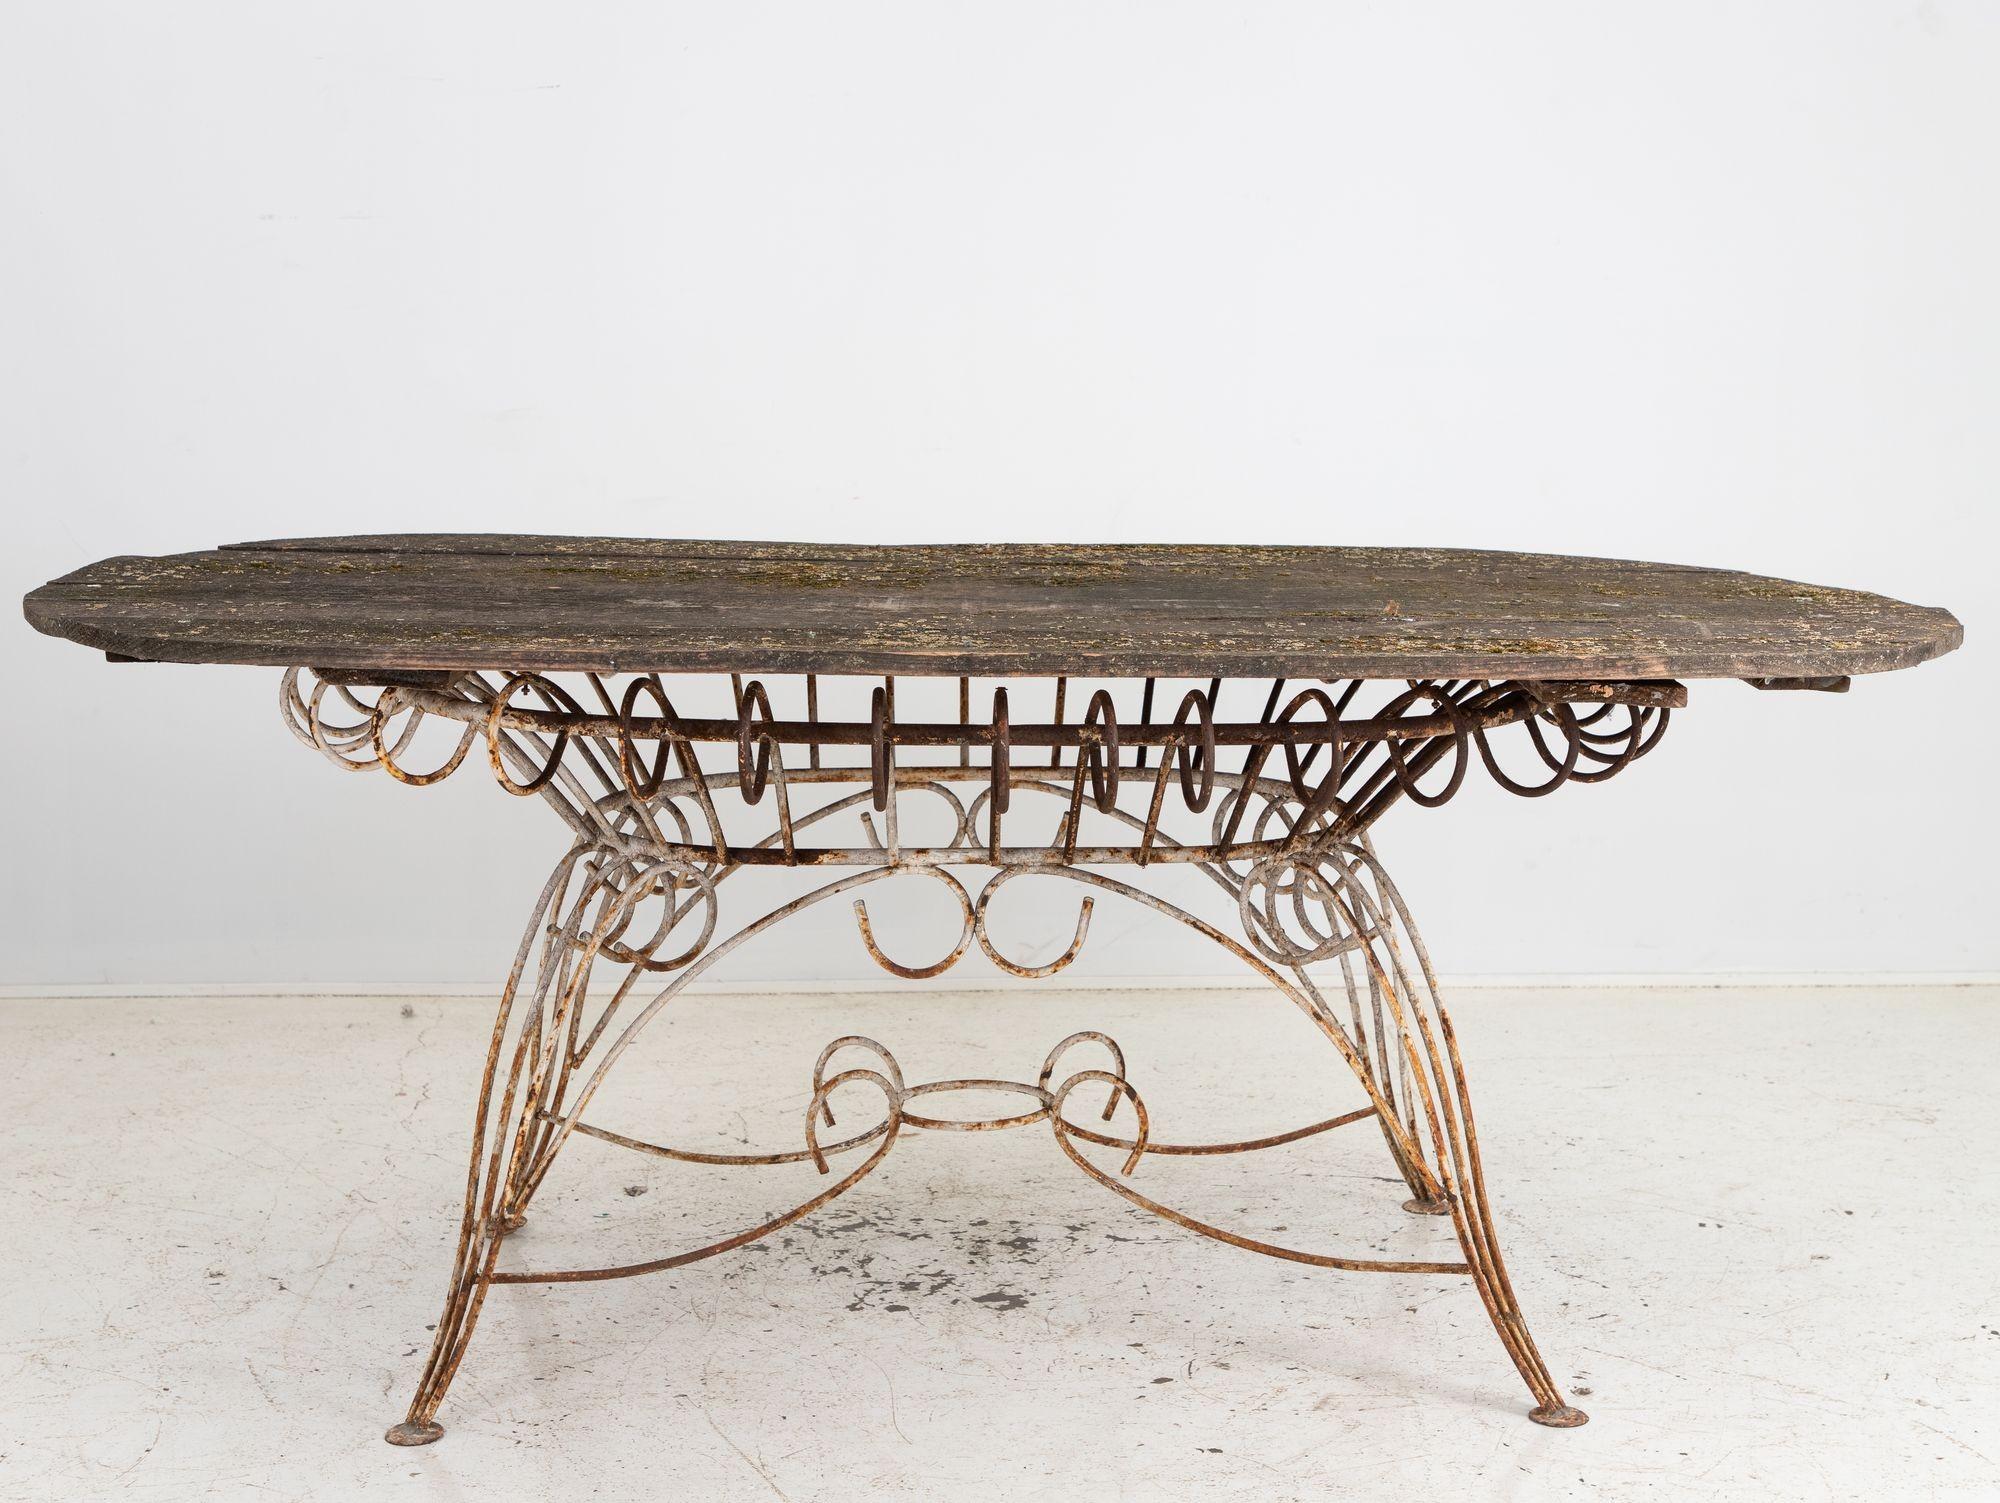 Dieser ovale französische Esstisch aus dem frühen 20. Jahrhundert hat eine spätere Holzplatte als Zeugnis der Handwerkskunst, verwittert und doch unverwüstlich. Darunter befindet sich ein kunstvoll geschwungener Eisensockel, der an die Feinheiten